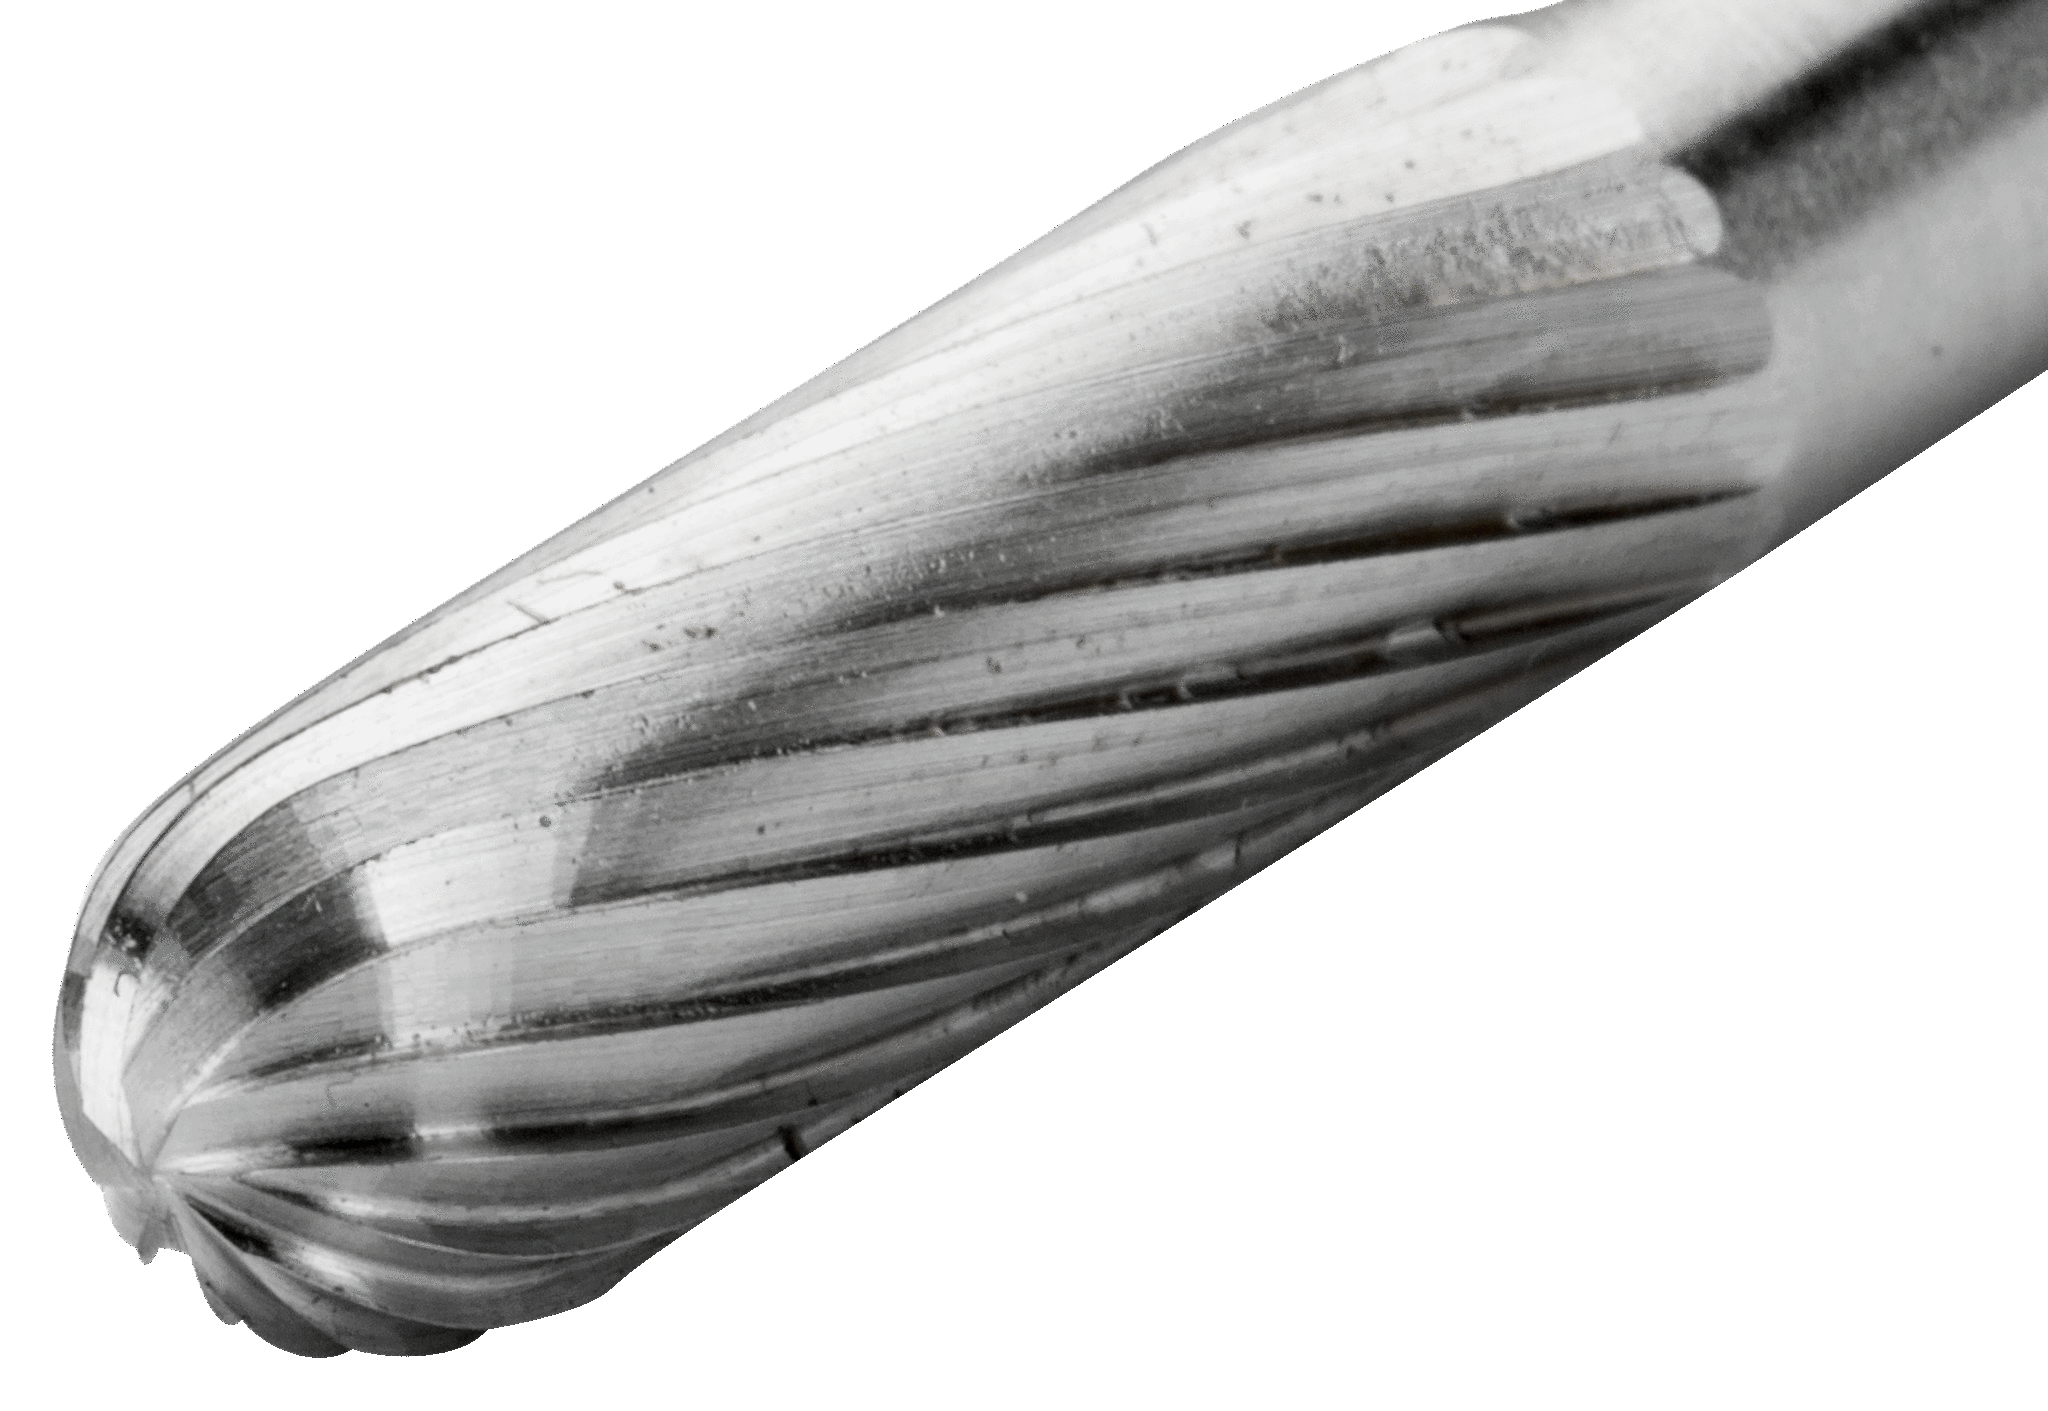 картинка Борфрезы из быстрорежущей стали с цилиндрической скругленной головкой BAHCO HSSG-C0616M от магазина "Элит-инструмент"